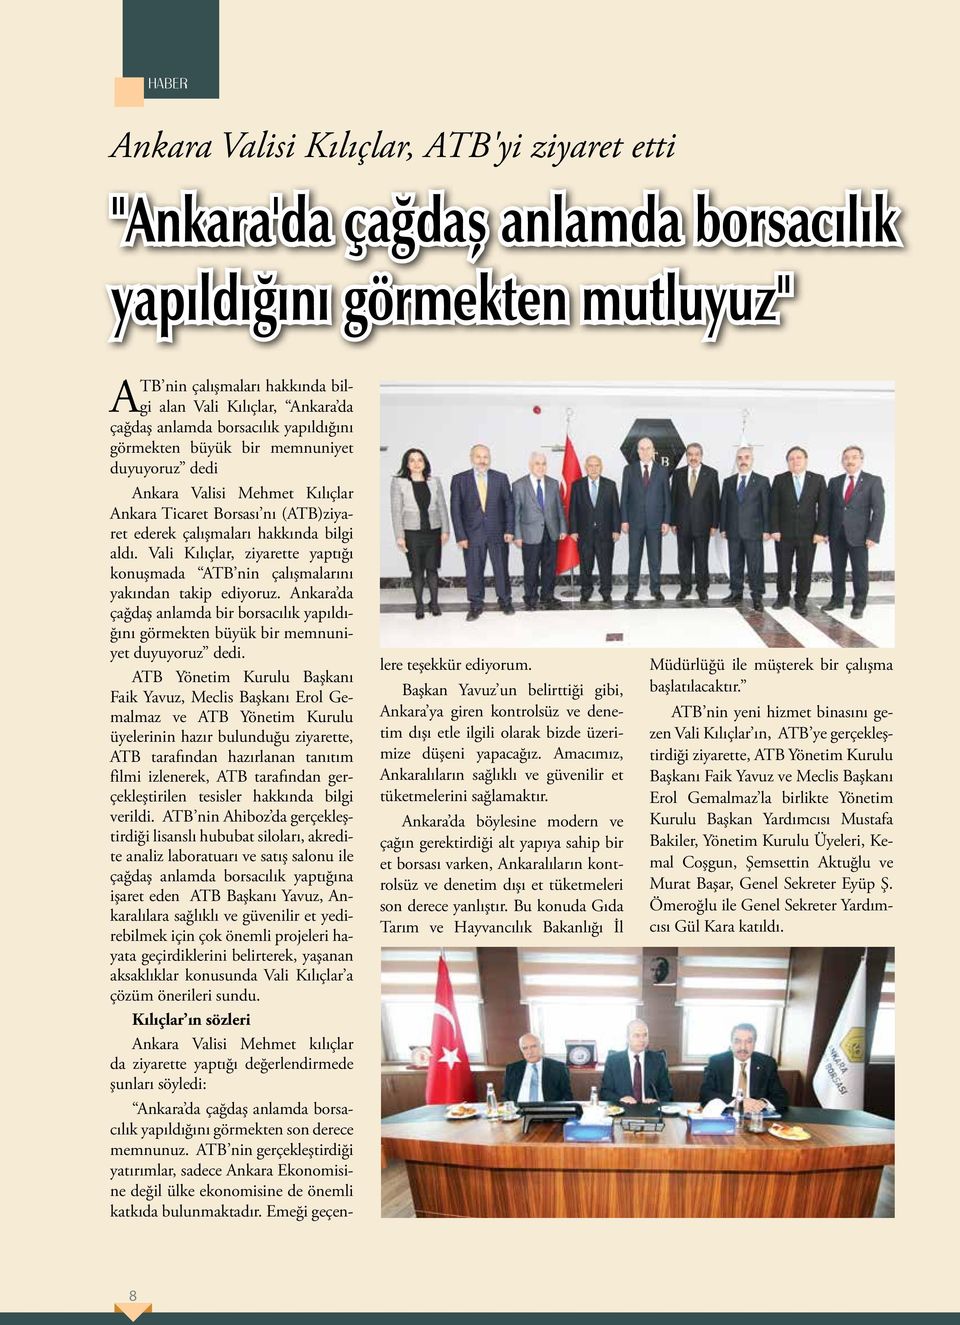 Vali Kılıçlar, ziyarette yaptığı konuşmada ATB nin çalışmalarını yakından takip ediyoruz. Ankara da çağdaş anlamda bir borsacılık yapıldığını görmekten büyük bir memnuniyet duyuyoruz dedi.